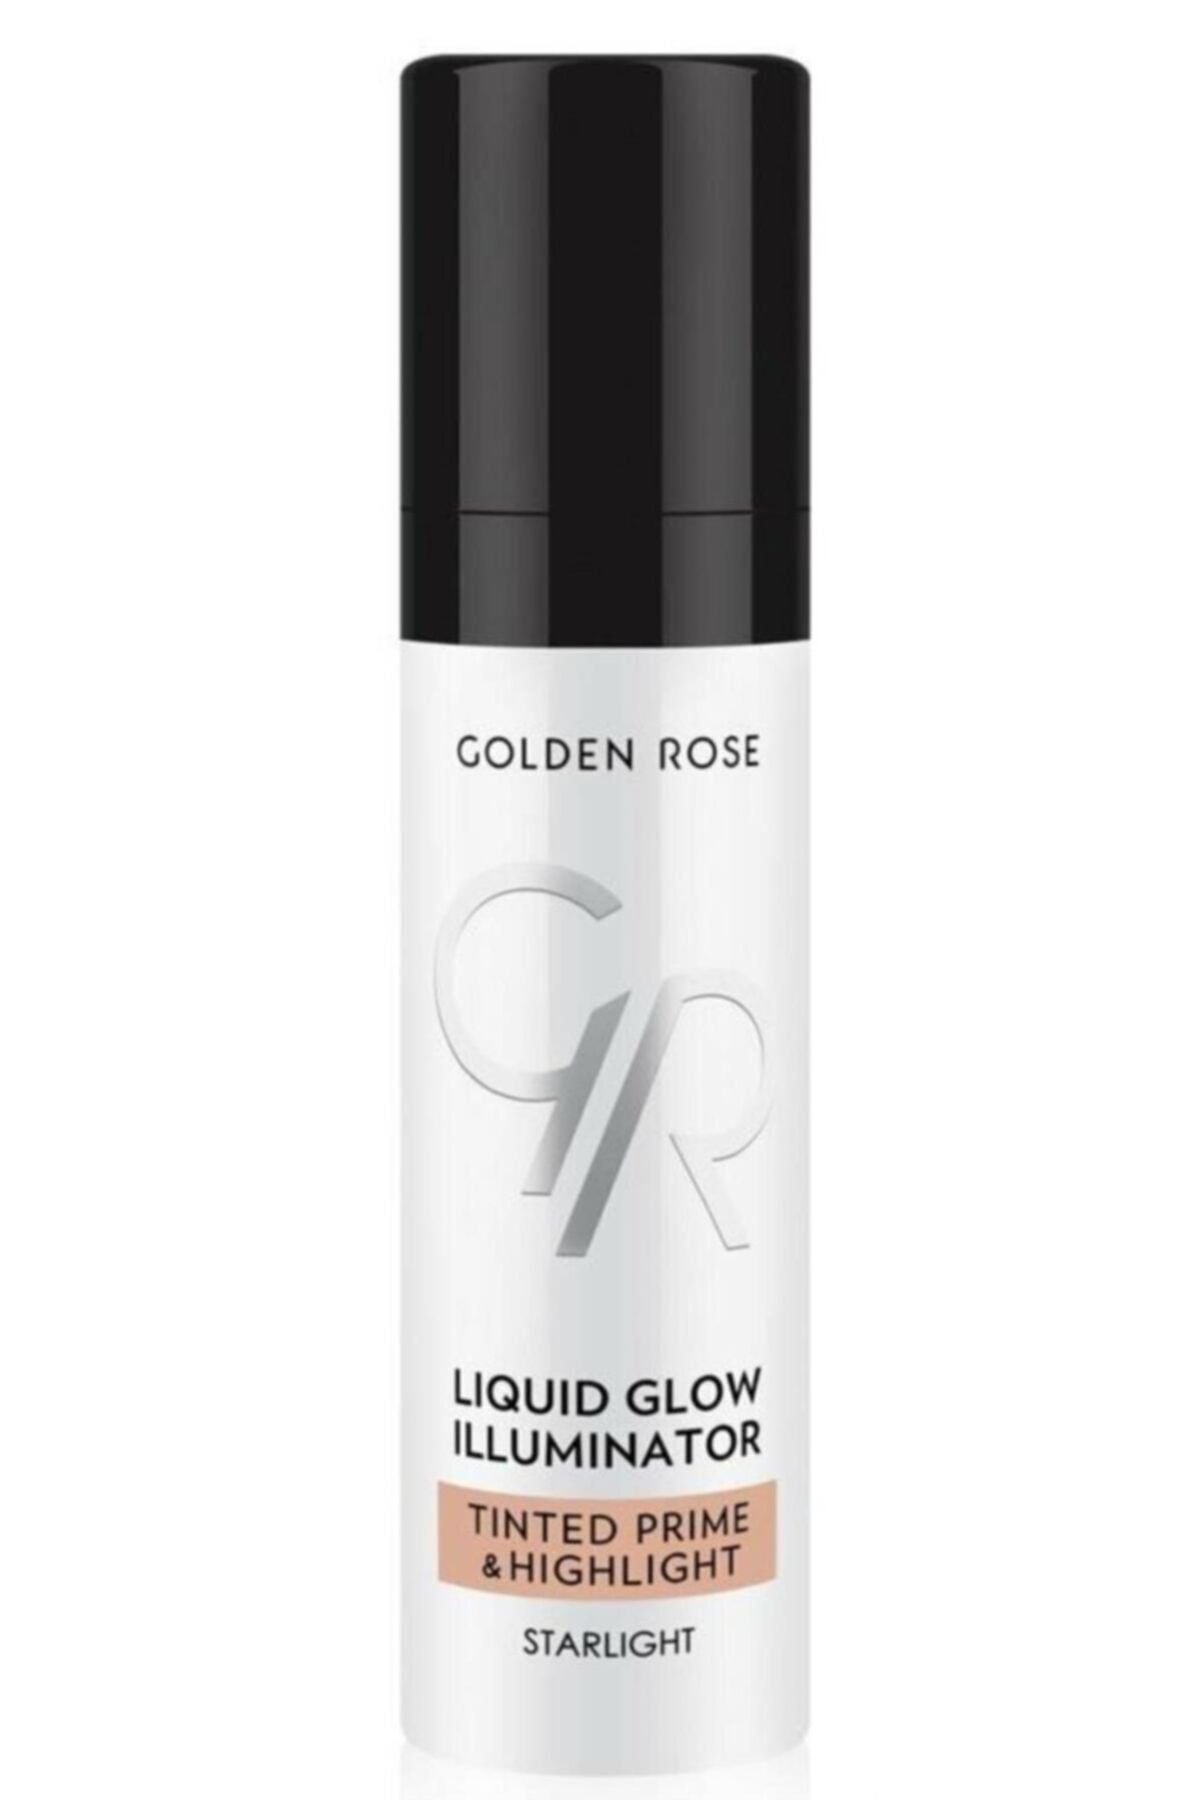 Golden Rose Marka: Likit Aydınlatıcı - Liquid Glow Illuminator 30 Ml 8691190122638 Kategori: Aydınl